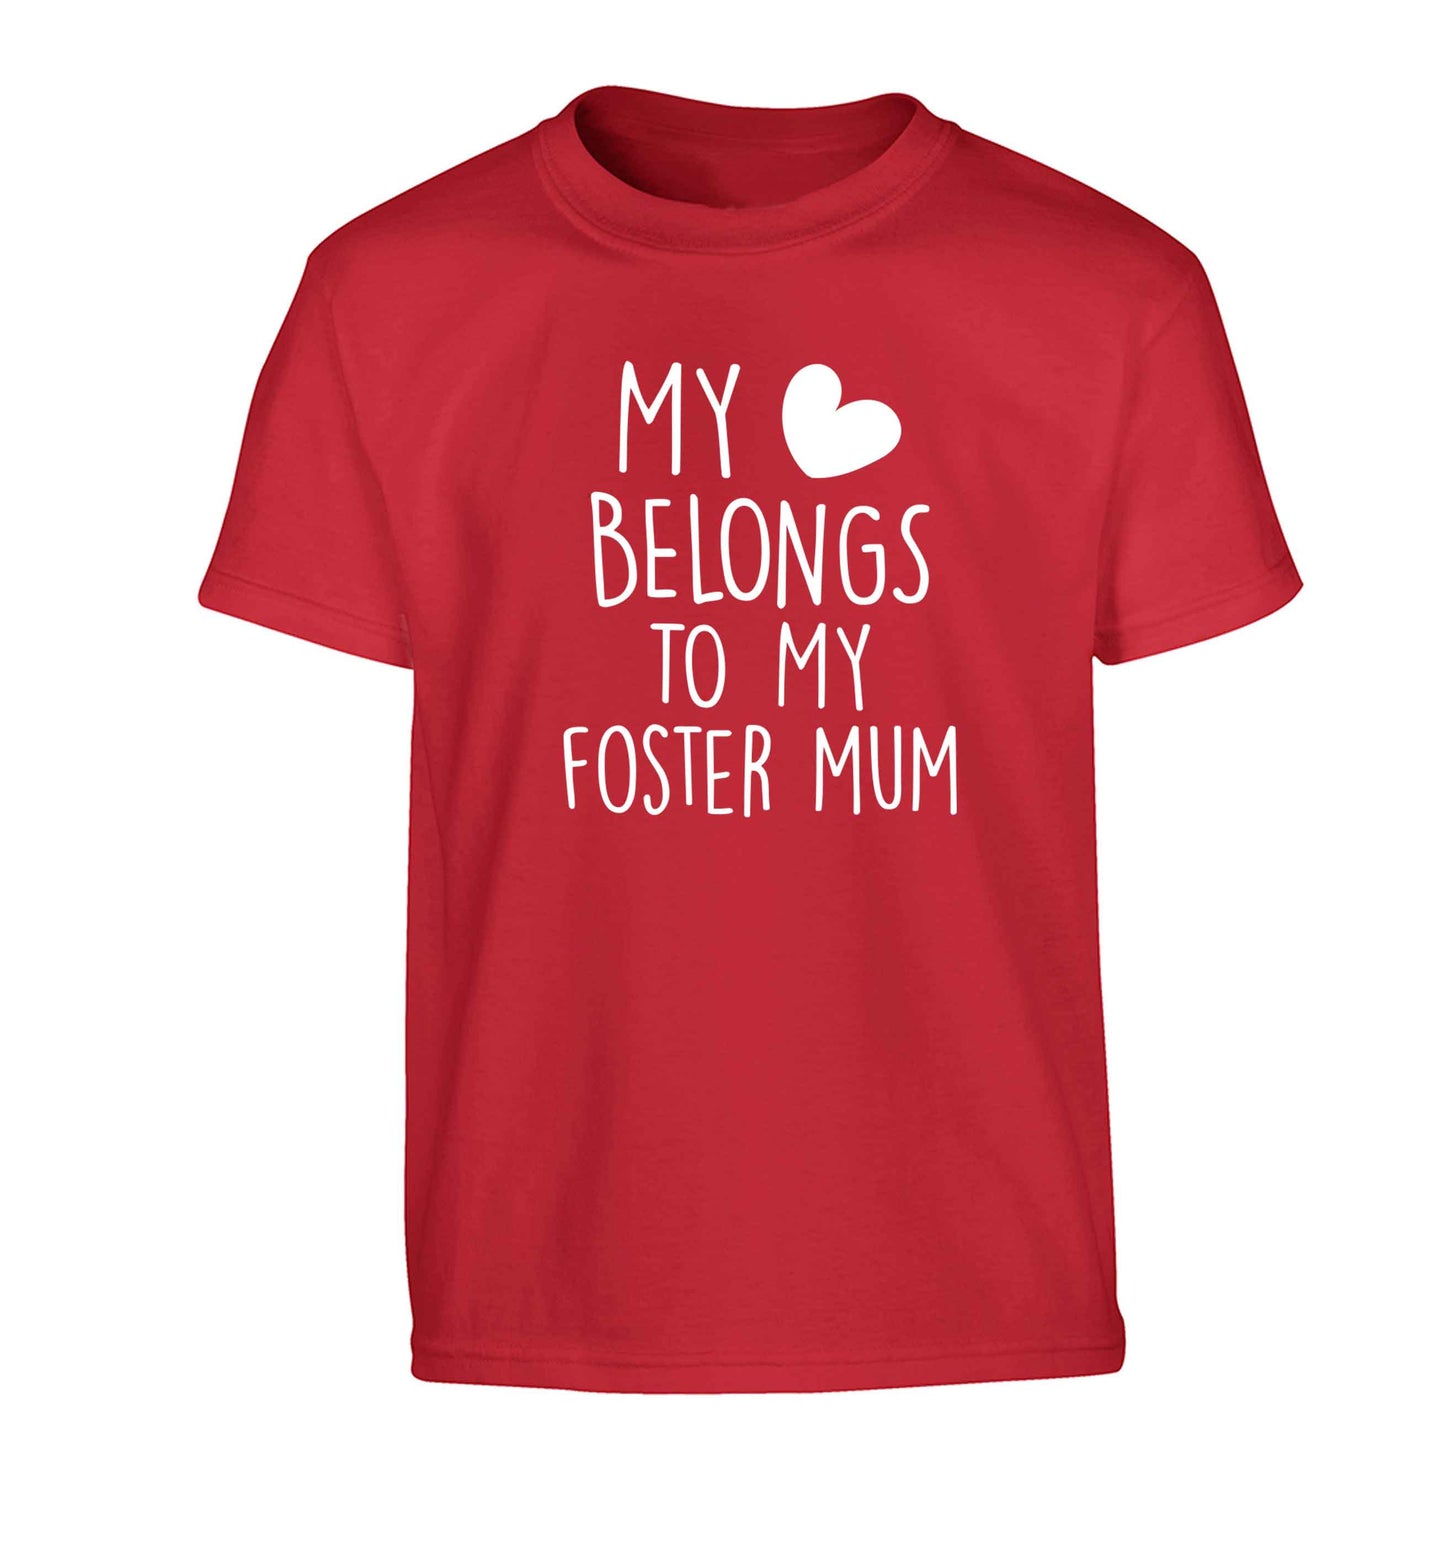 My heart belongs to my foster mum Children's red Tshirt 12-13 Years